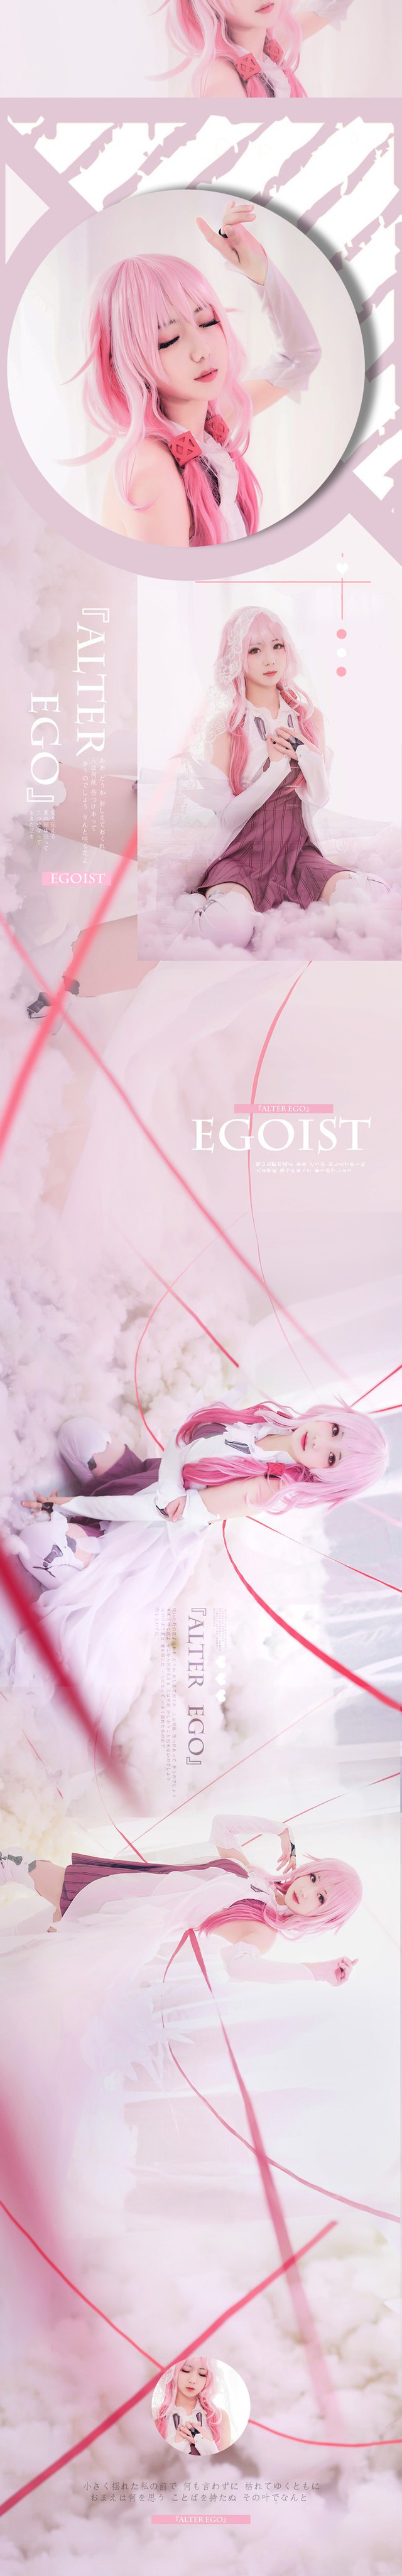 Ngắm cosplay EGOIST tuyệt đẹp trong Anime nổi tiếng Guilty Crown